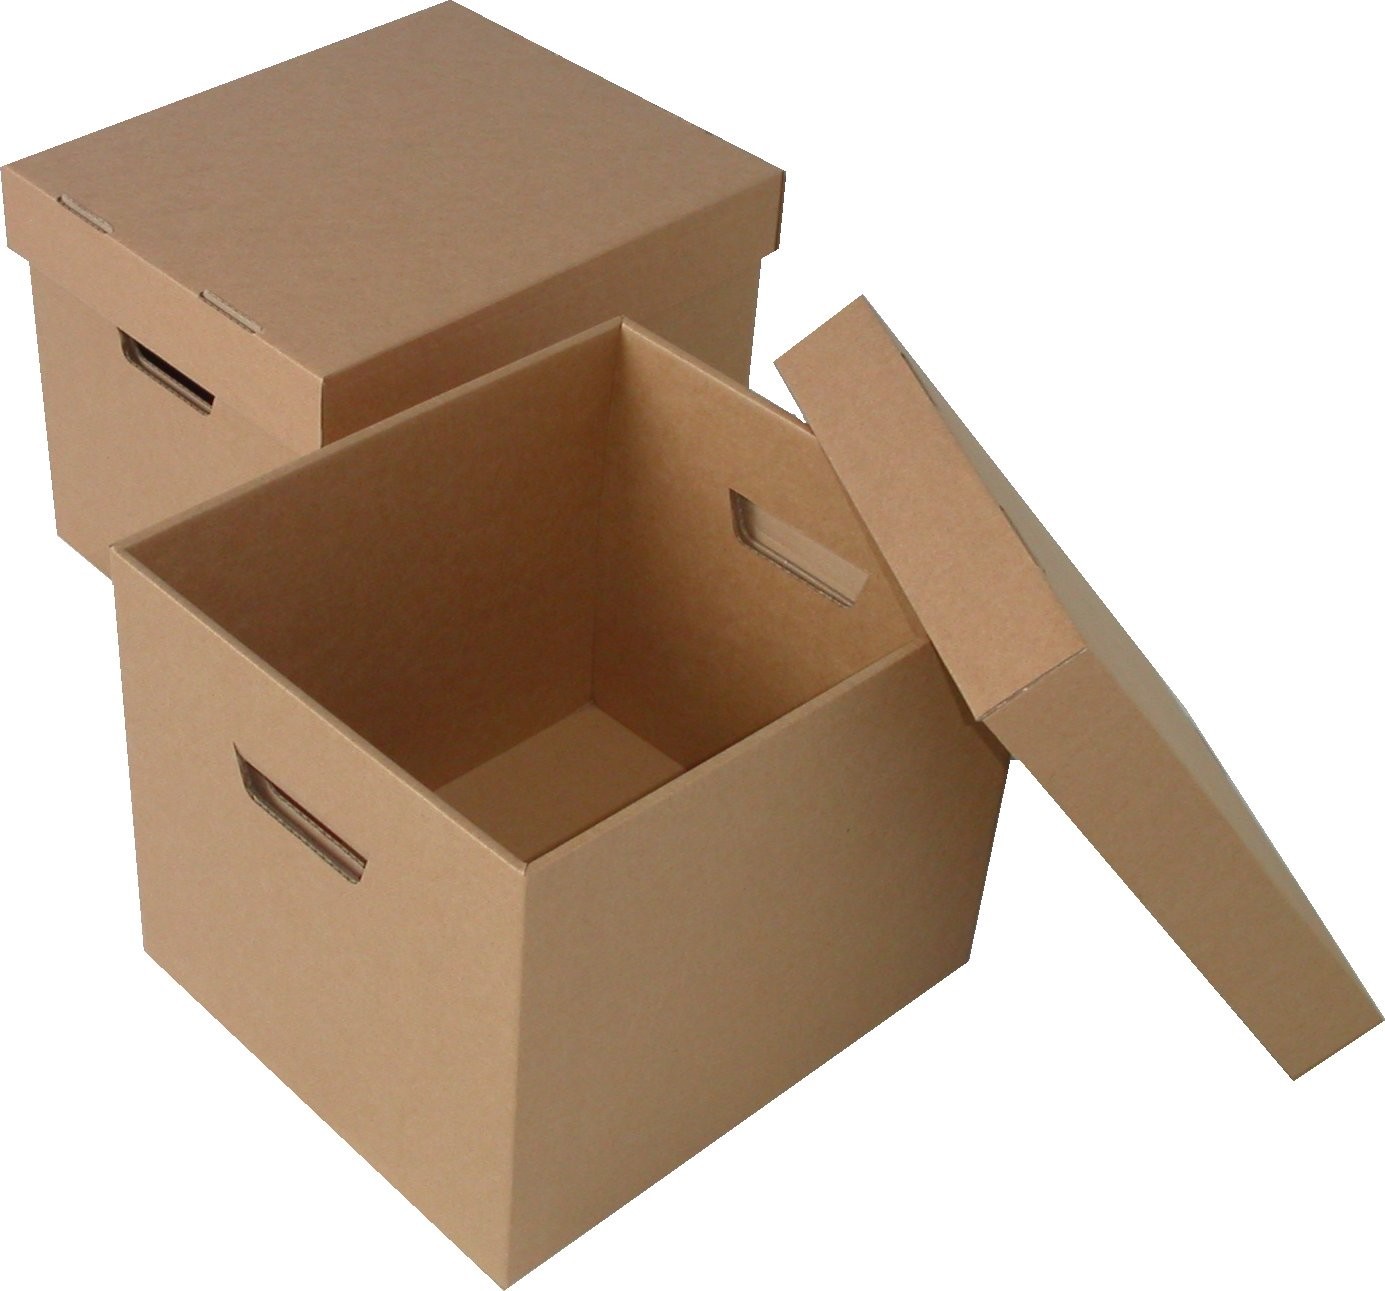 Sử dụng thùng carton đựng đồ để tiết kiệm chi phí